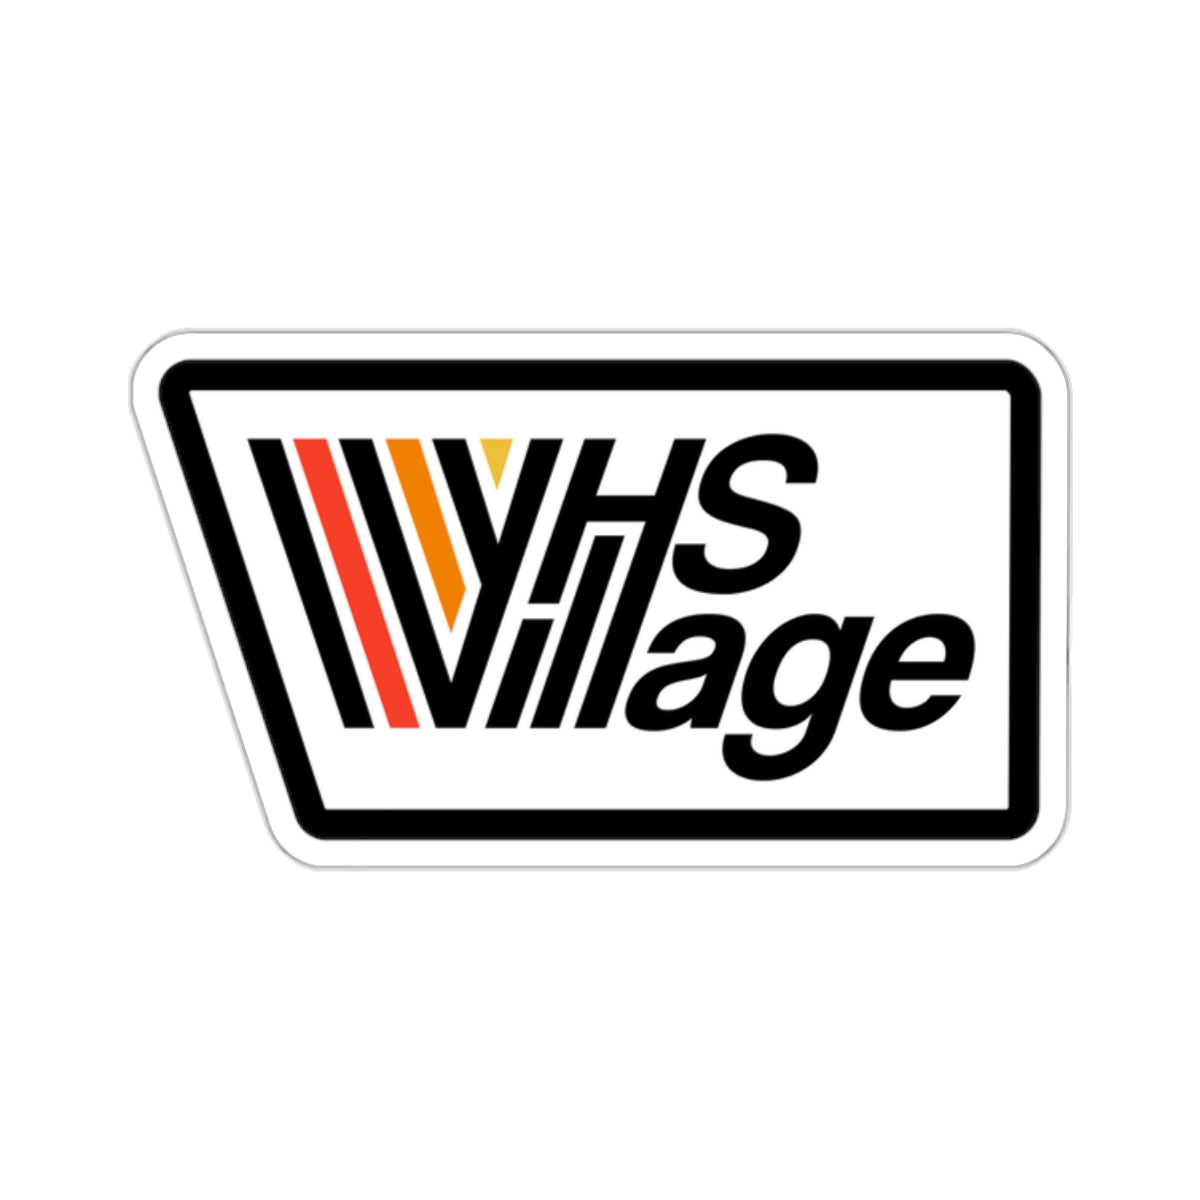 VHS Village Logo Stickers